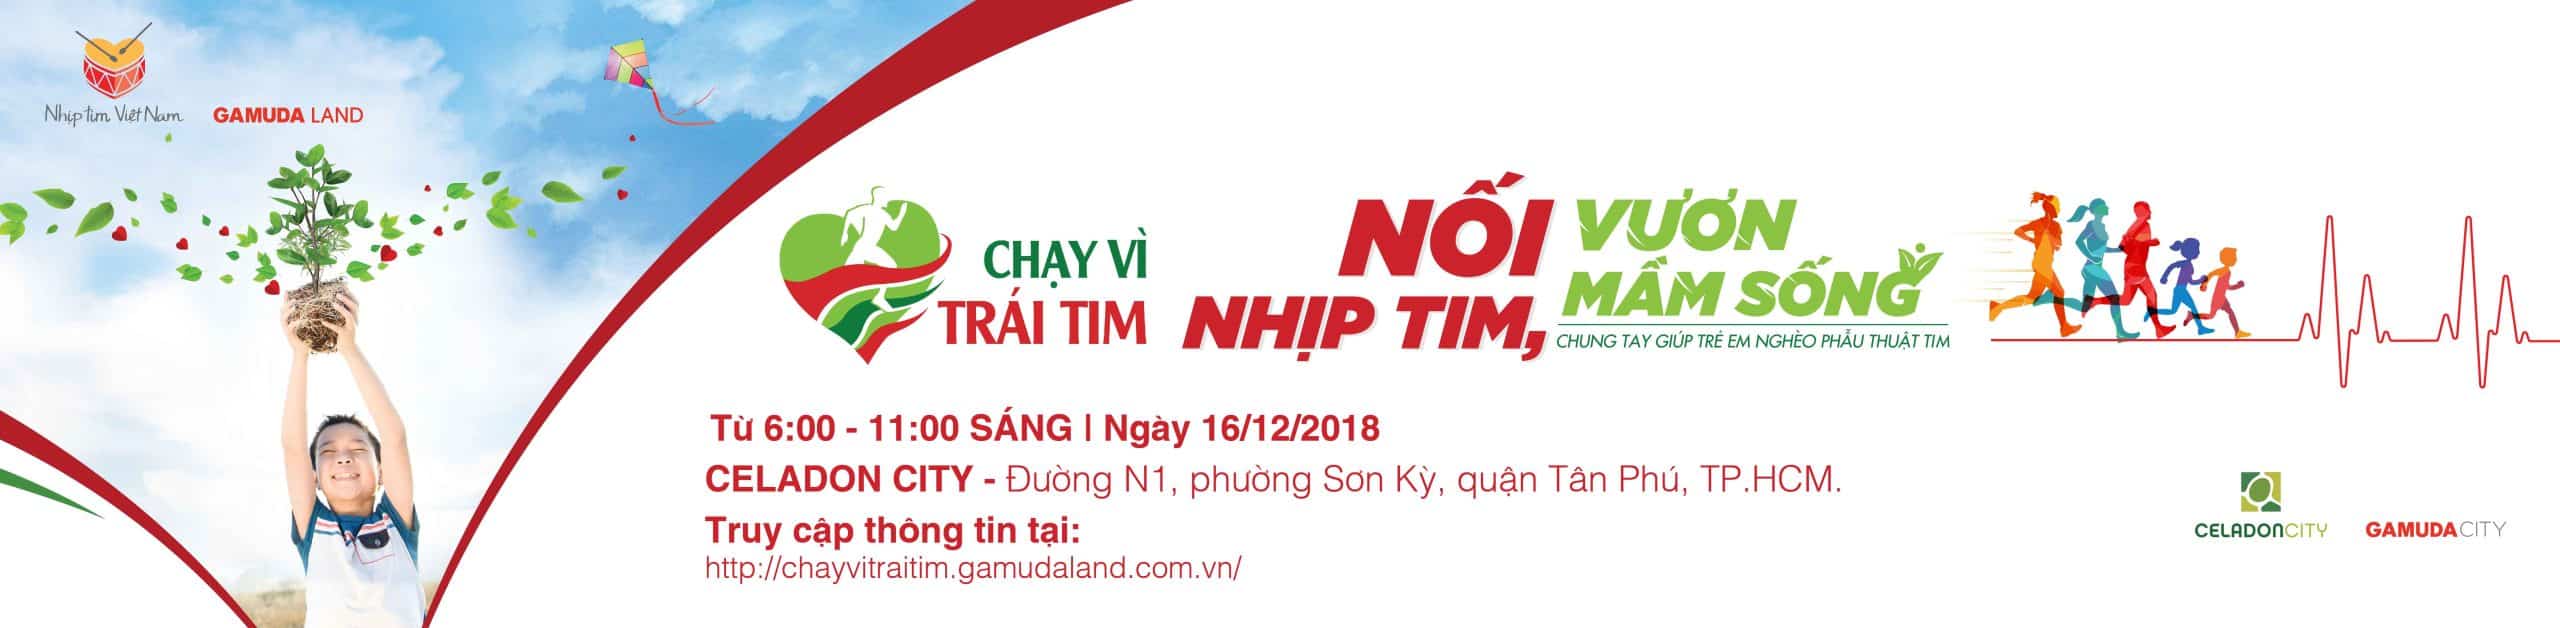 Cùng Nhịp Tim Việt Nam tham gia Chạy Vì Trái Tim 2018 vào ngày 16/12/2018